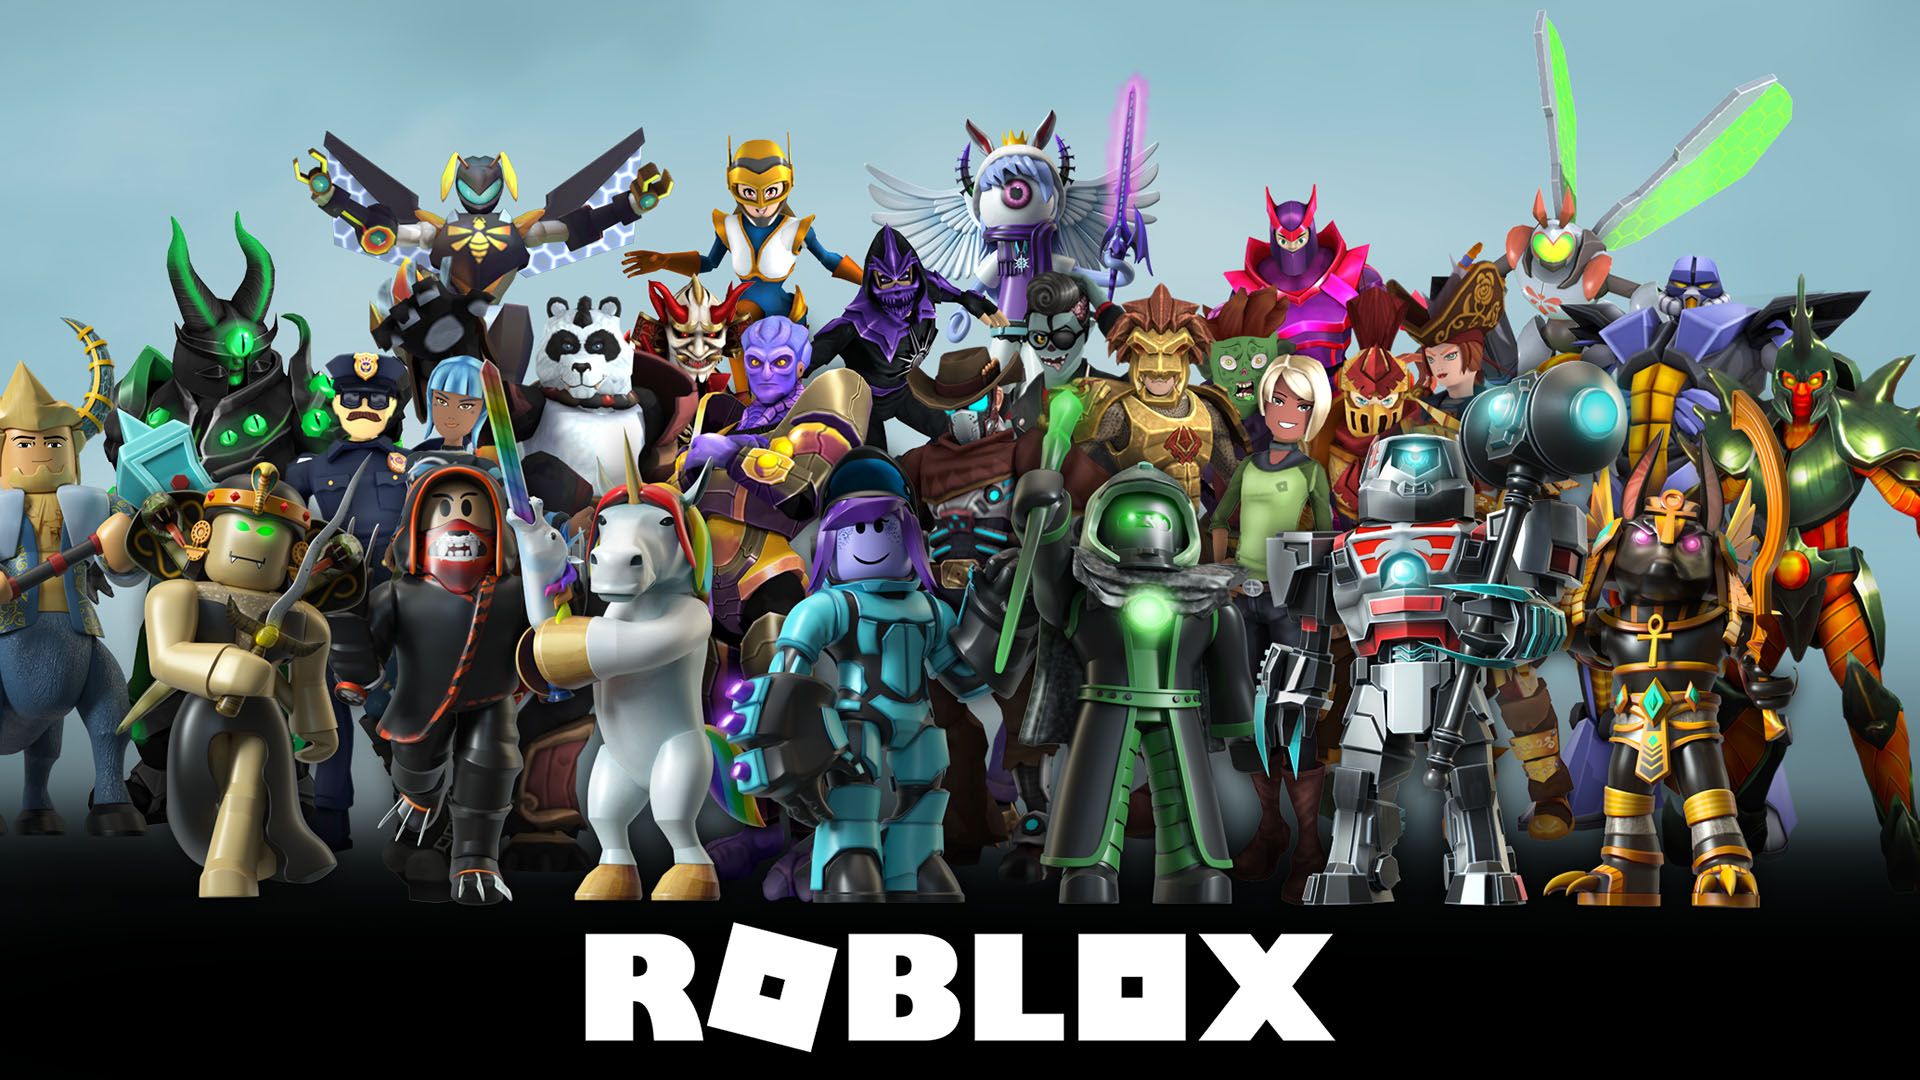 Game Roblox 1920x1080 Wallpaper Teahub Io - 1080p roblox